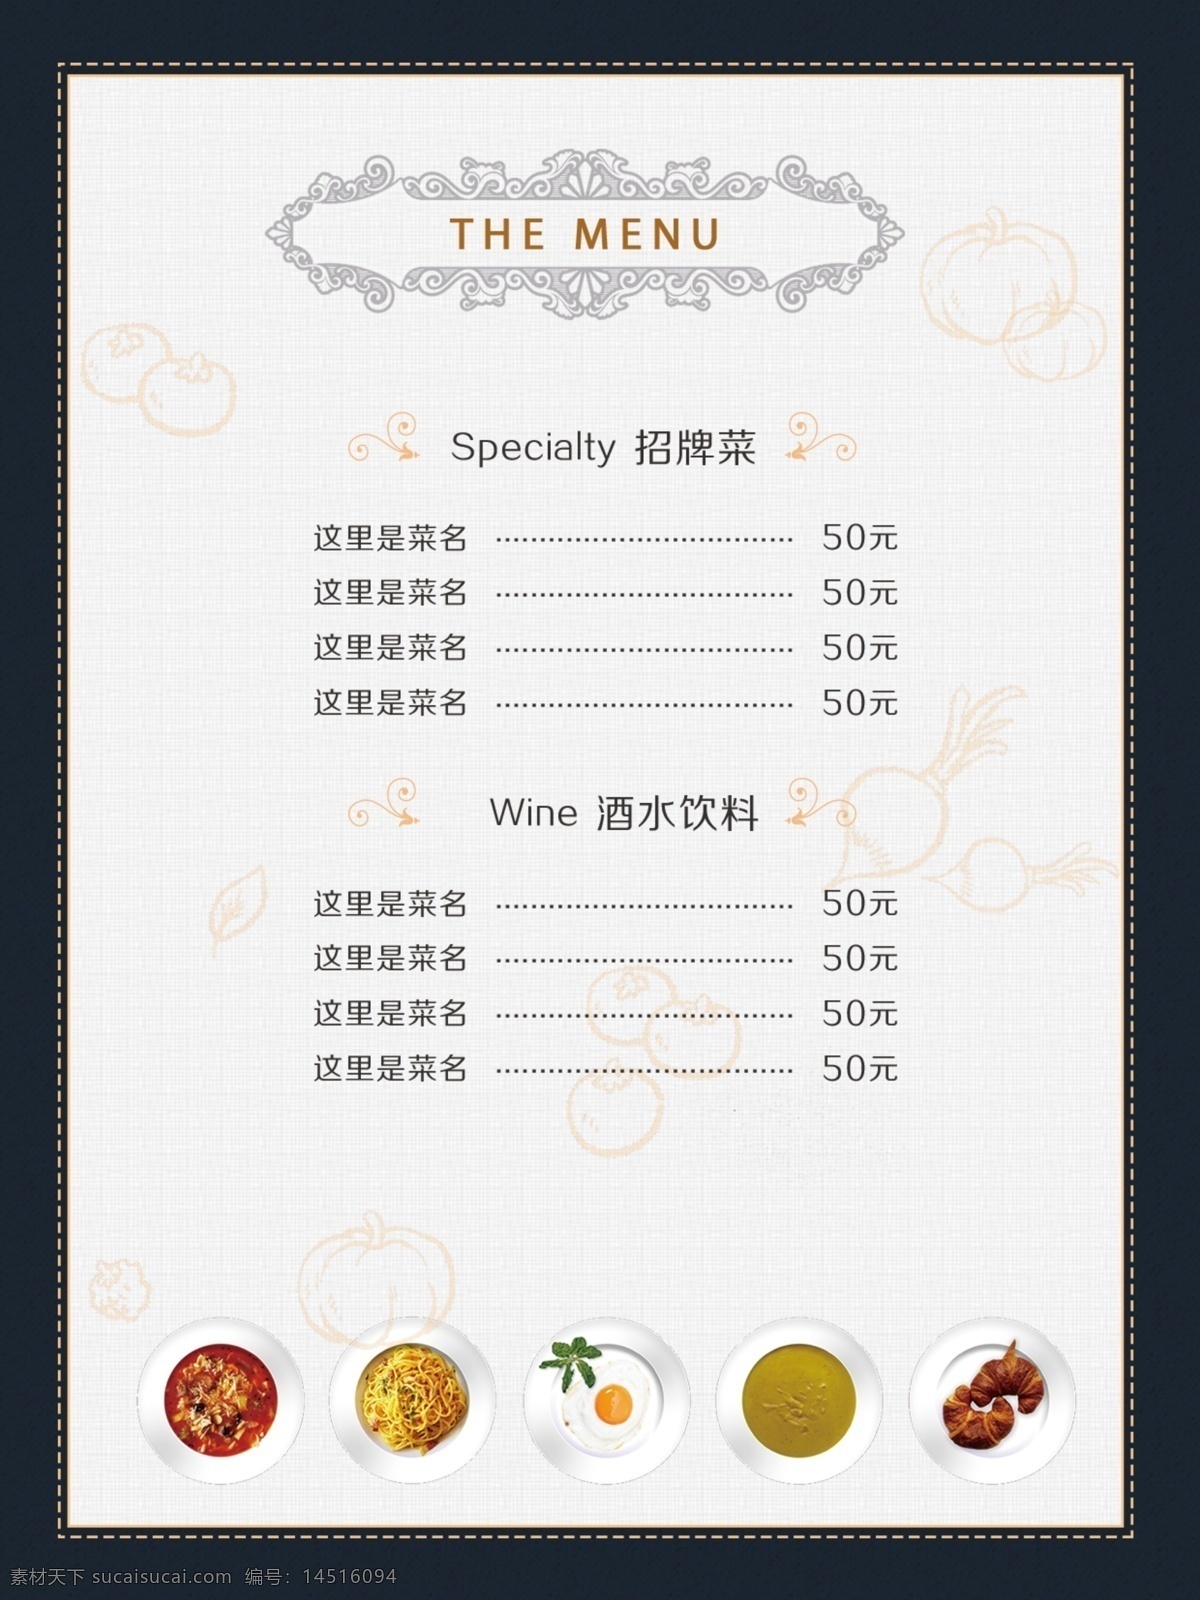 高档 西餐厅 菜单 菜谱 菜谱设计 手绘 简约 饭店菜谱